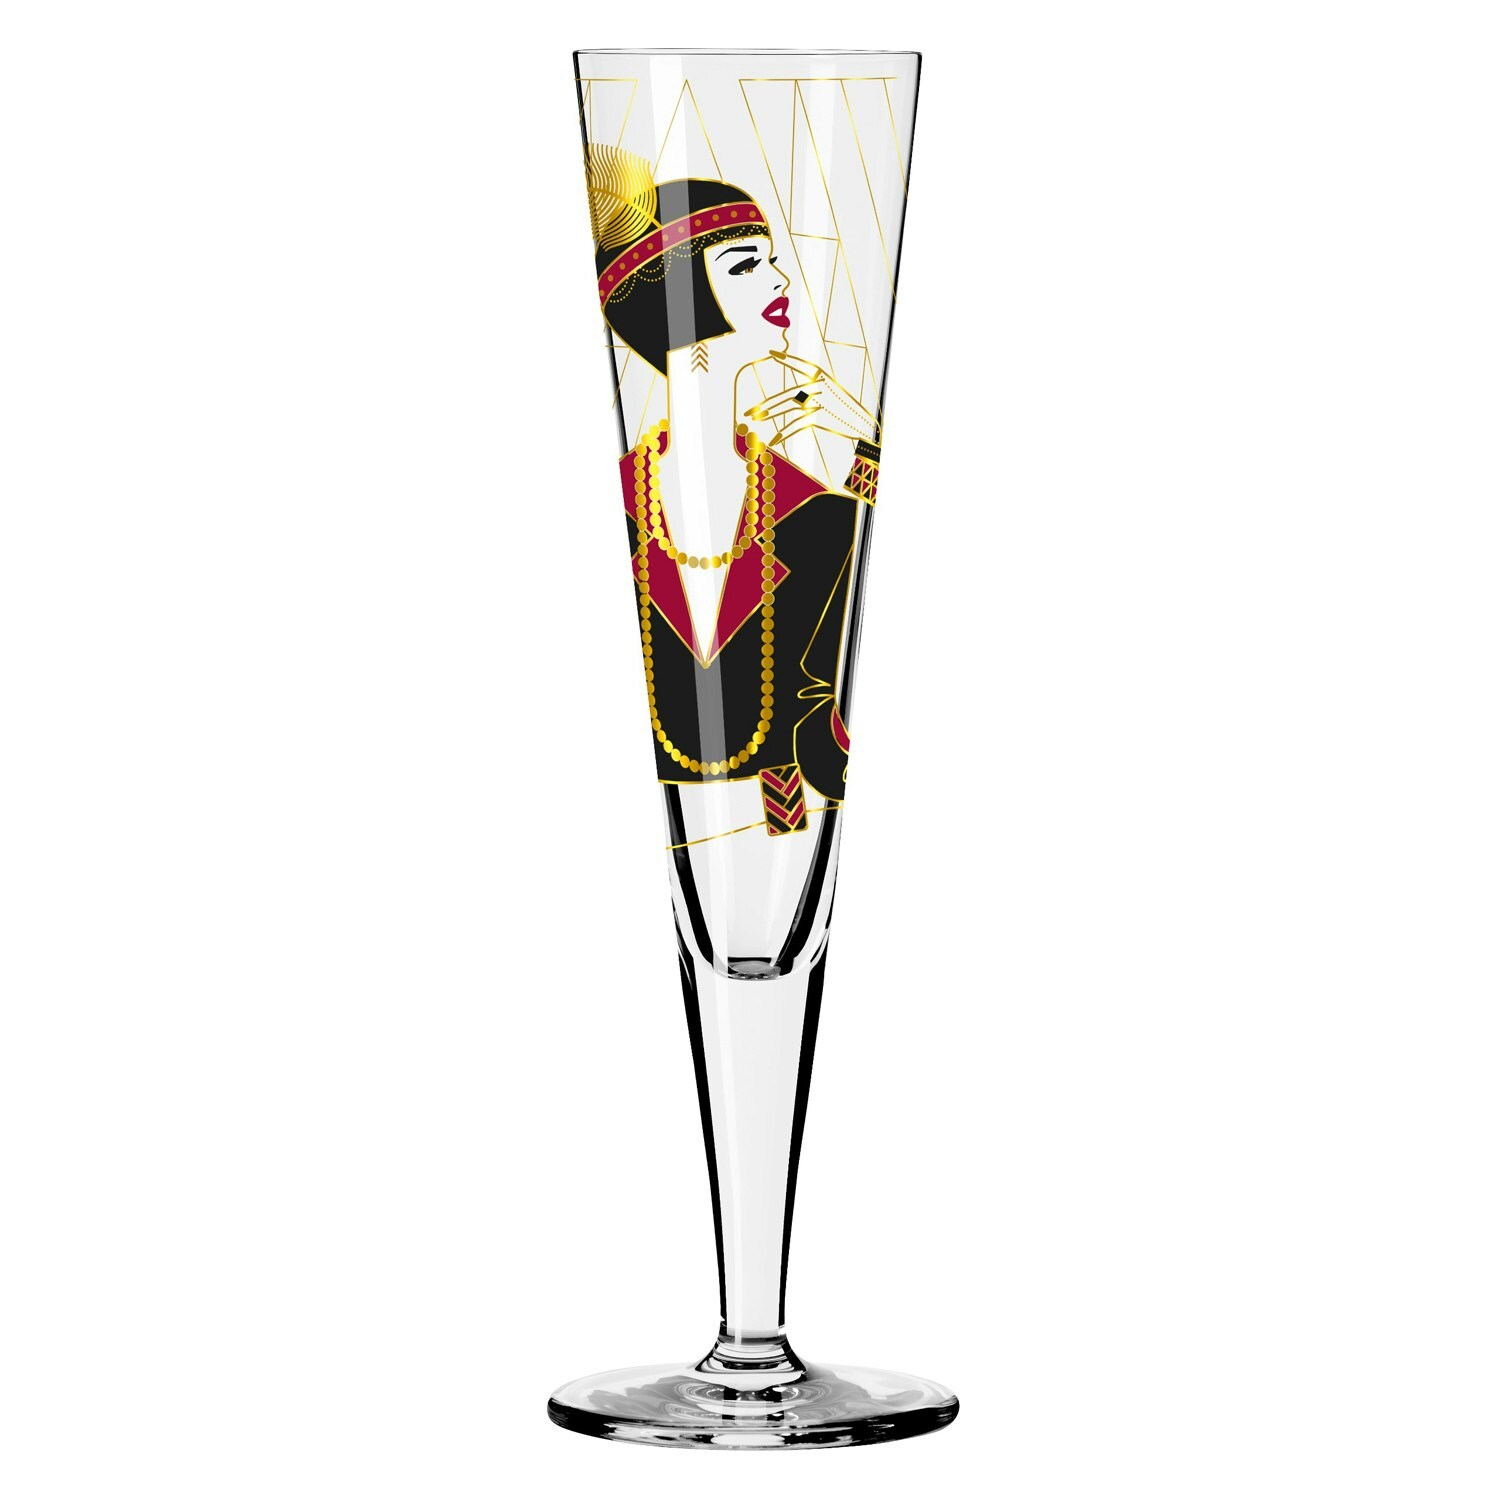 Goldnacht Champagne Glass, Ritzenhoff @ NO: RoyalDesign - 27